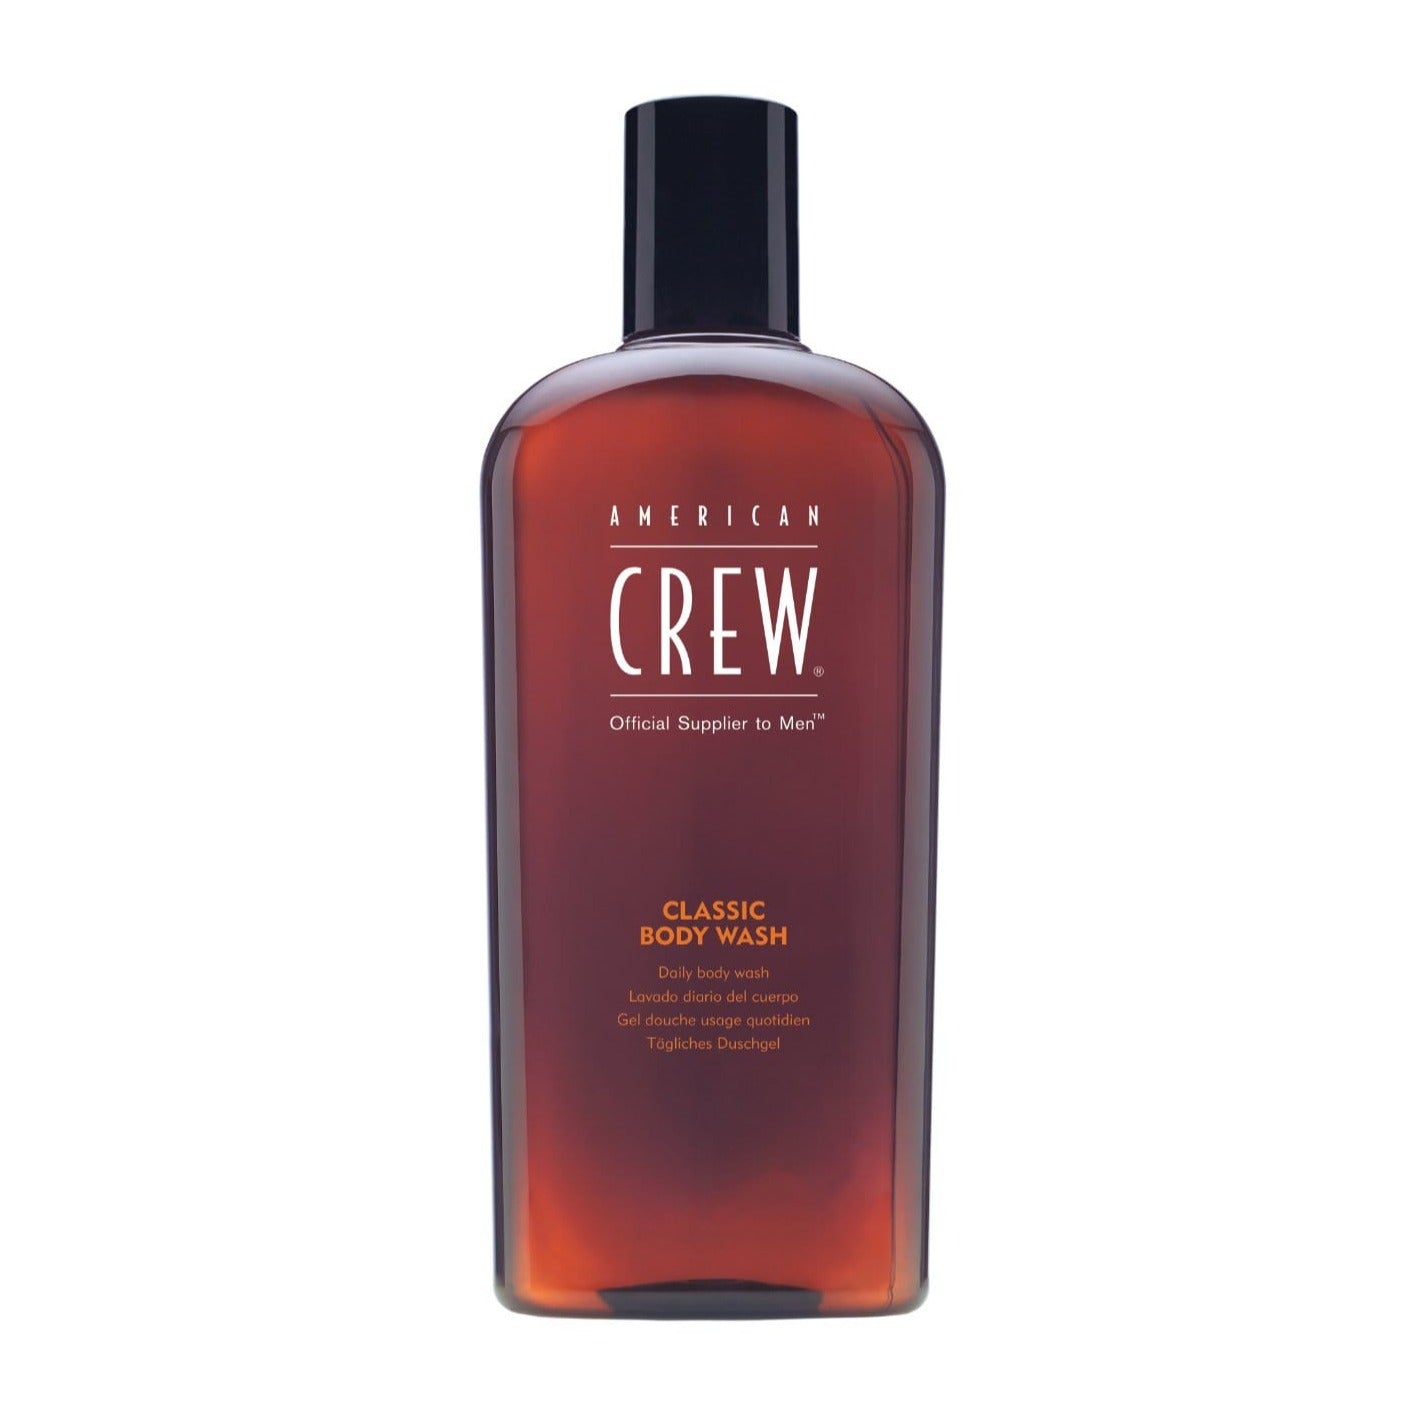 American Crew Body Wash Shampoo - Sagema